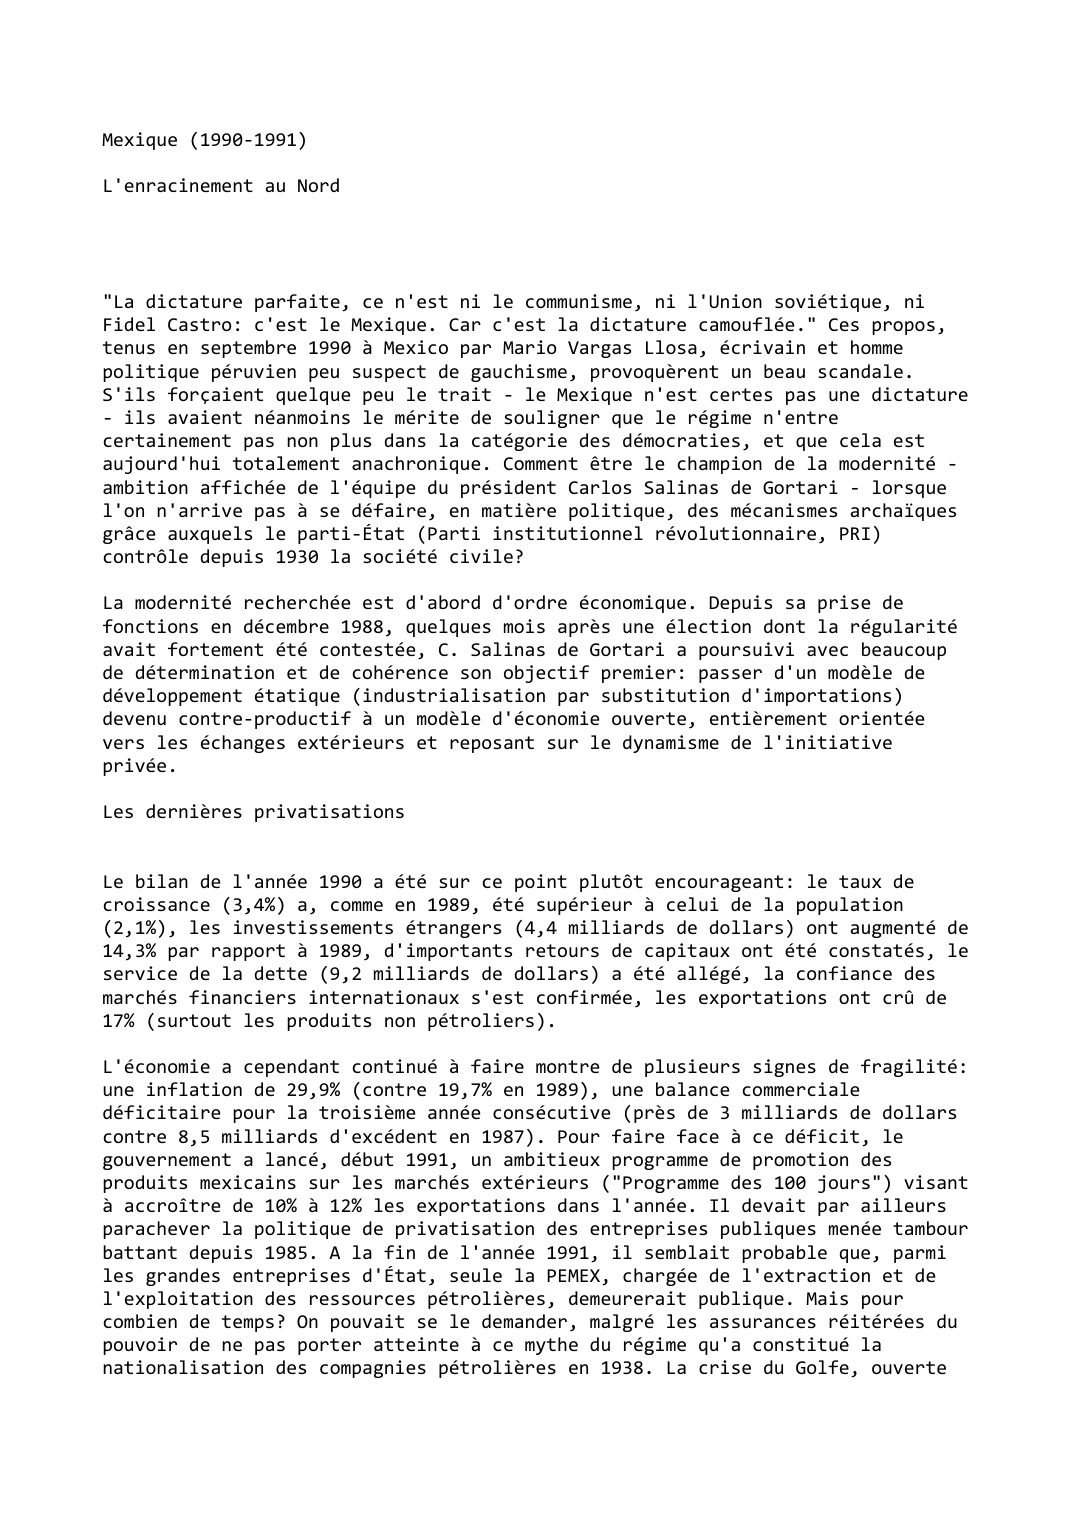 Prévisualisation du document Mexique (1990-1991)

L'enracinement au Nord